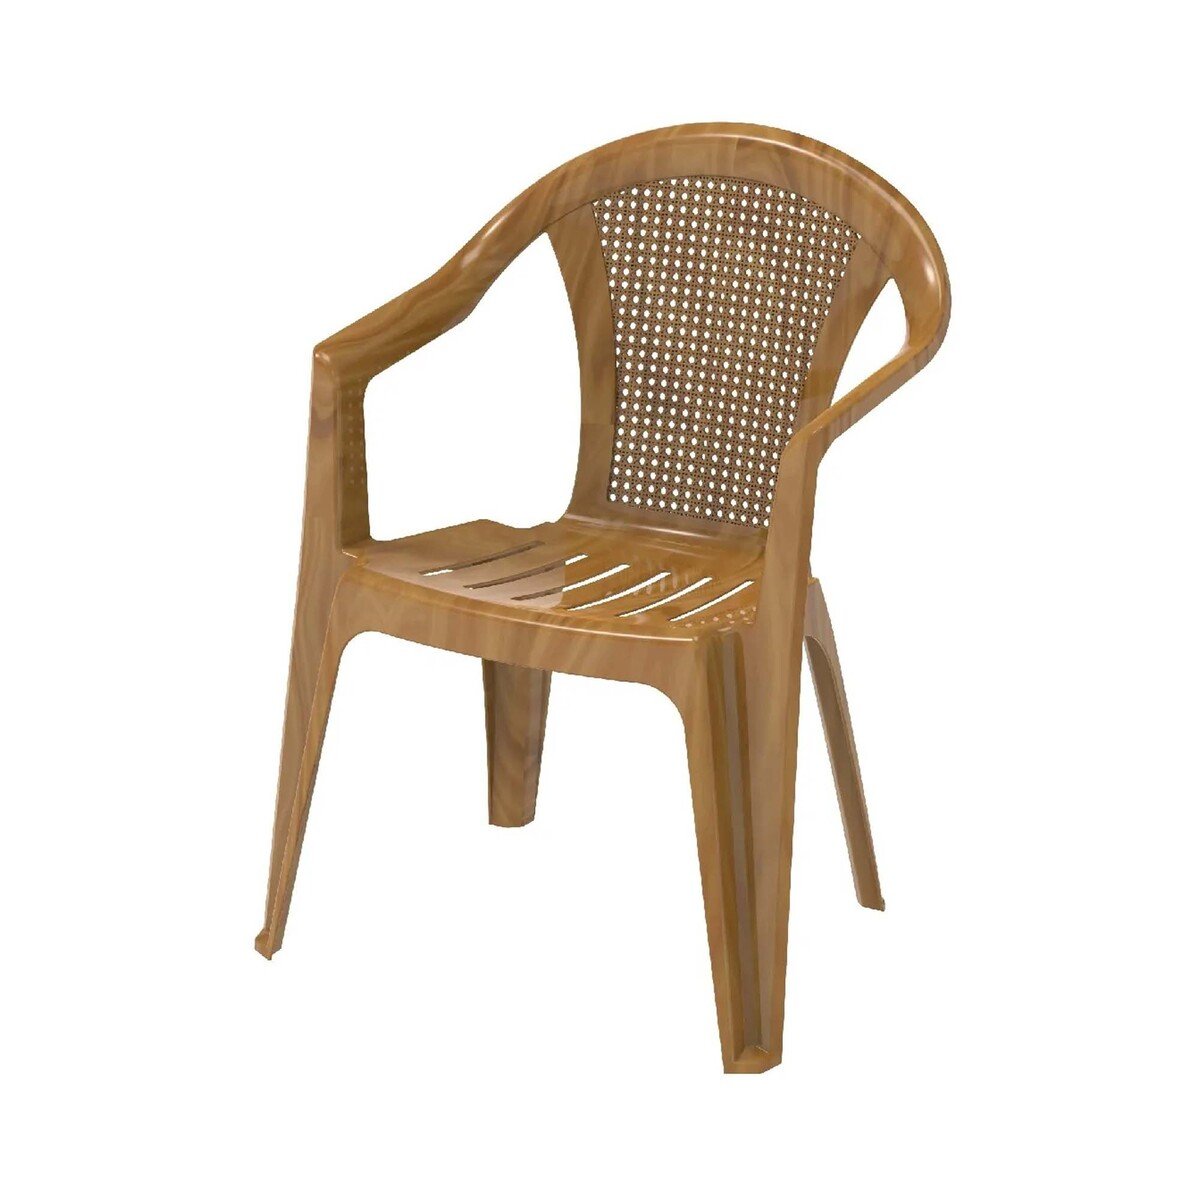 Cosmoplast Bamboo Outdoor Garden Chair IFOFAC009 Assorted Color